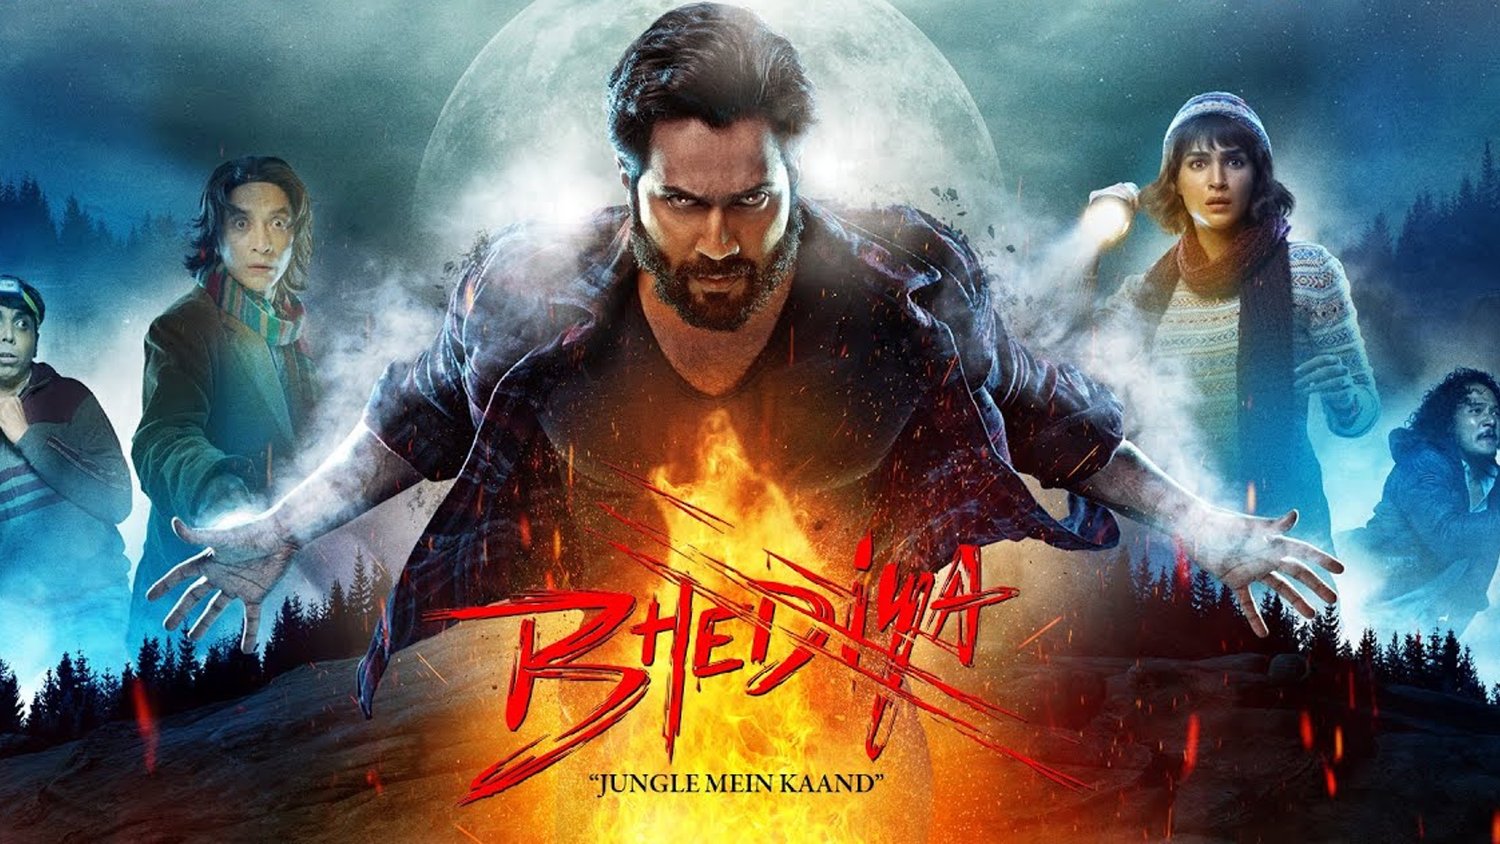 Bande-annonce amusante pour le film Bollywood Werewolf à gros budget BHEDIYA